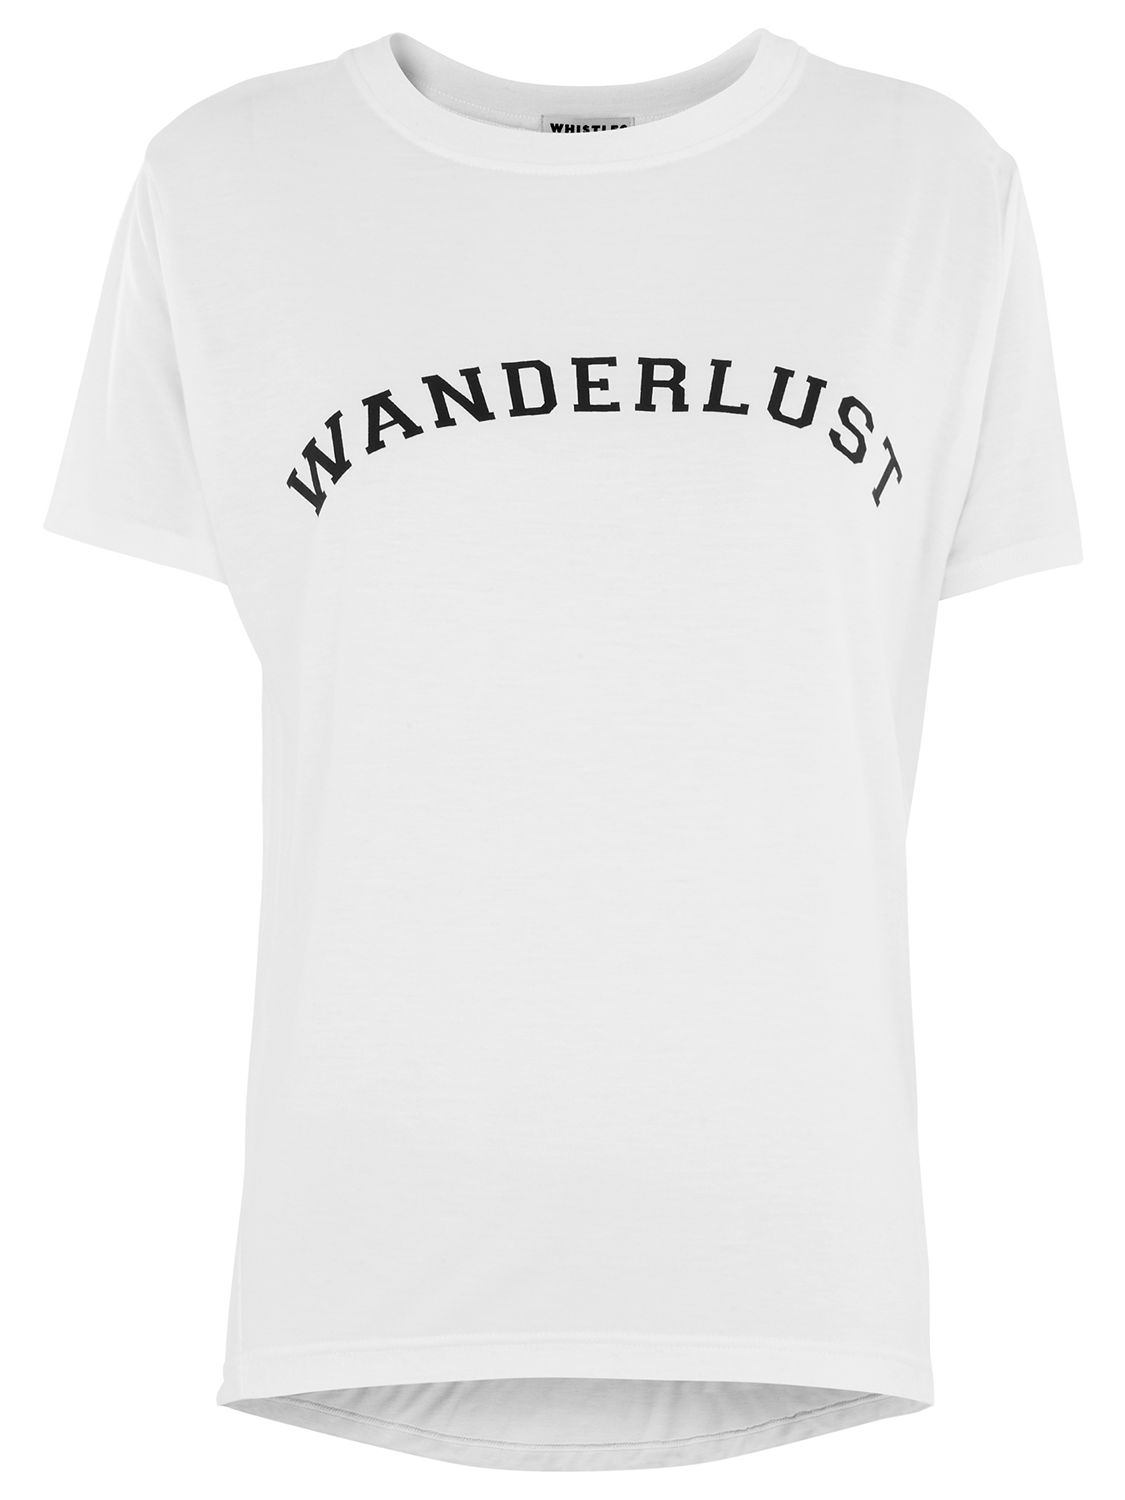 Whistles Wanderlust T-Shirt, White